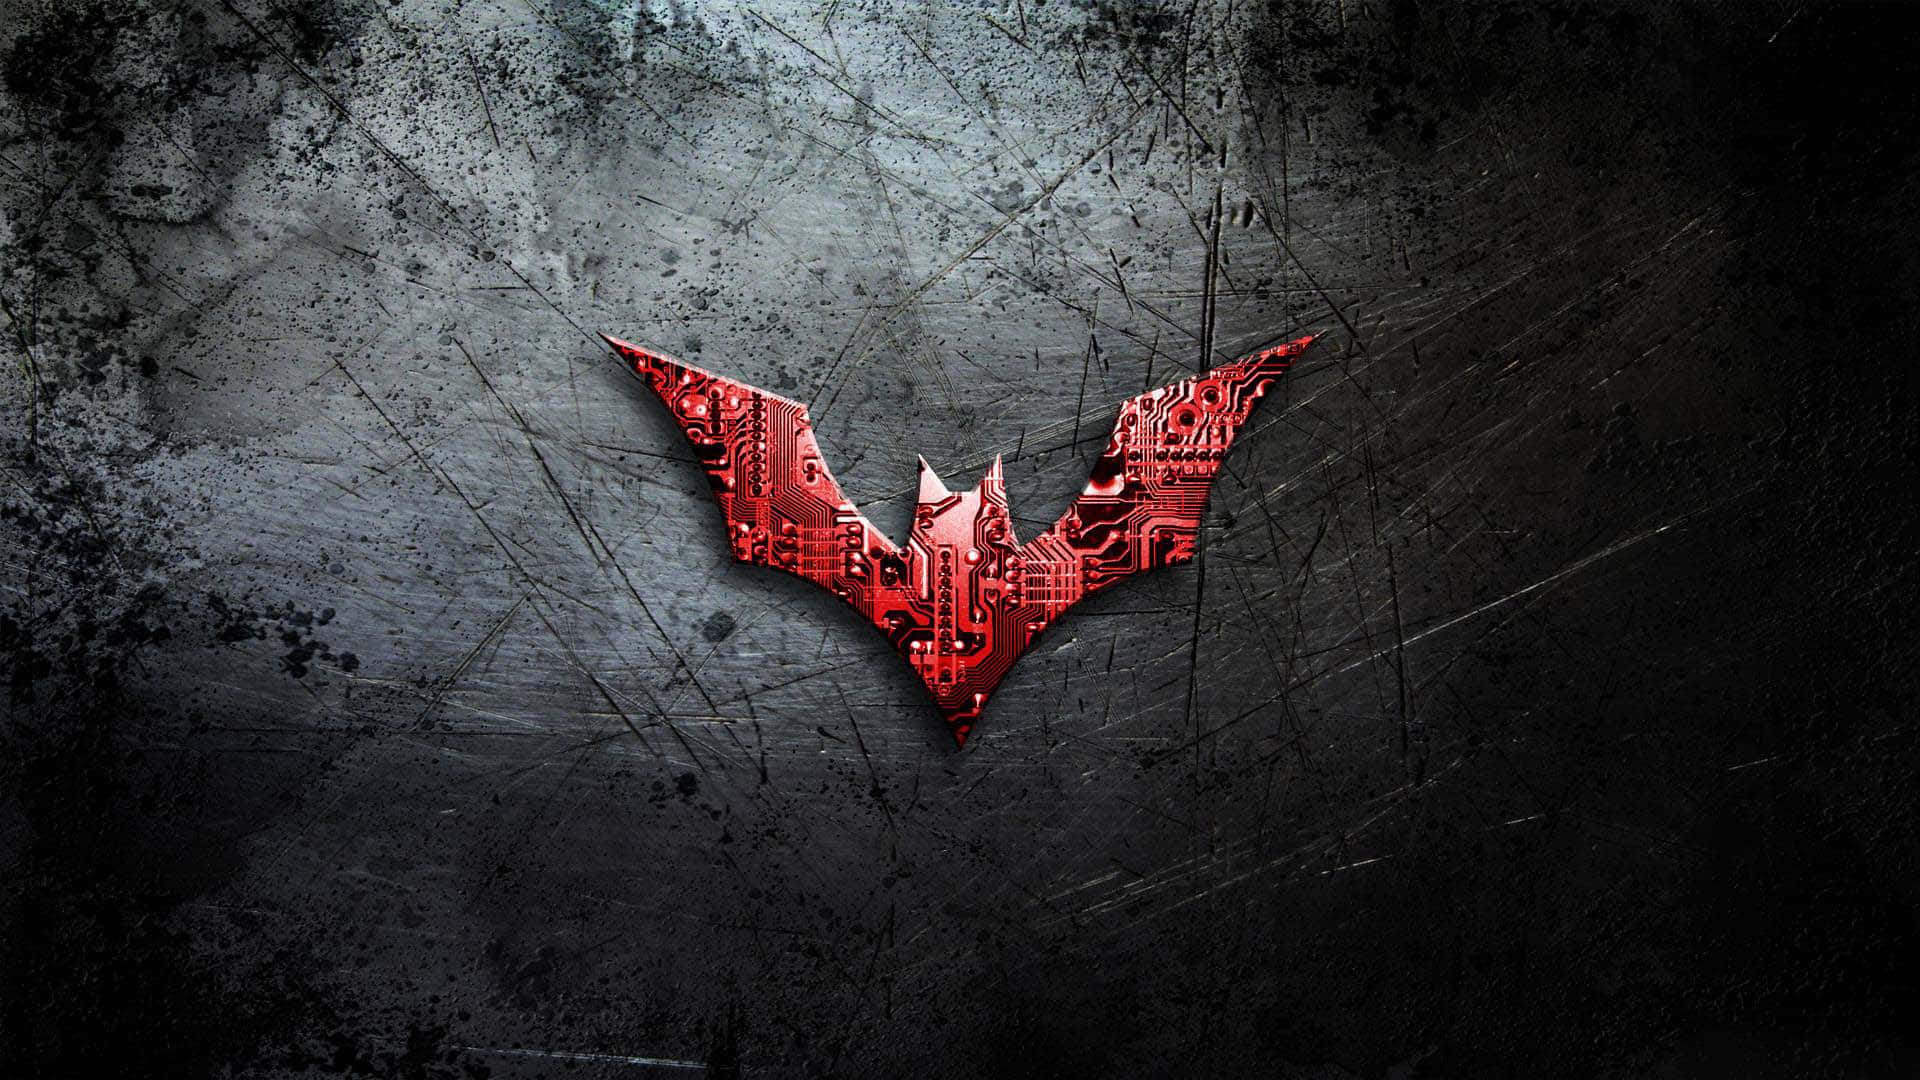 Free Batman Logo Wallpaper Downloads, [200+] Batman Logo Wallpapers for  FREE 